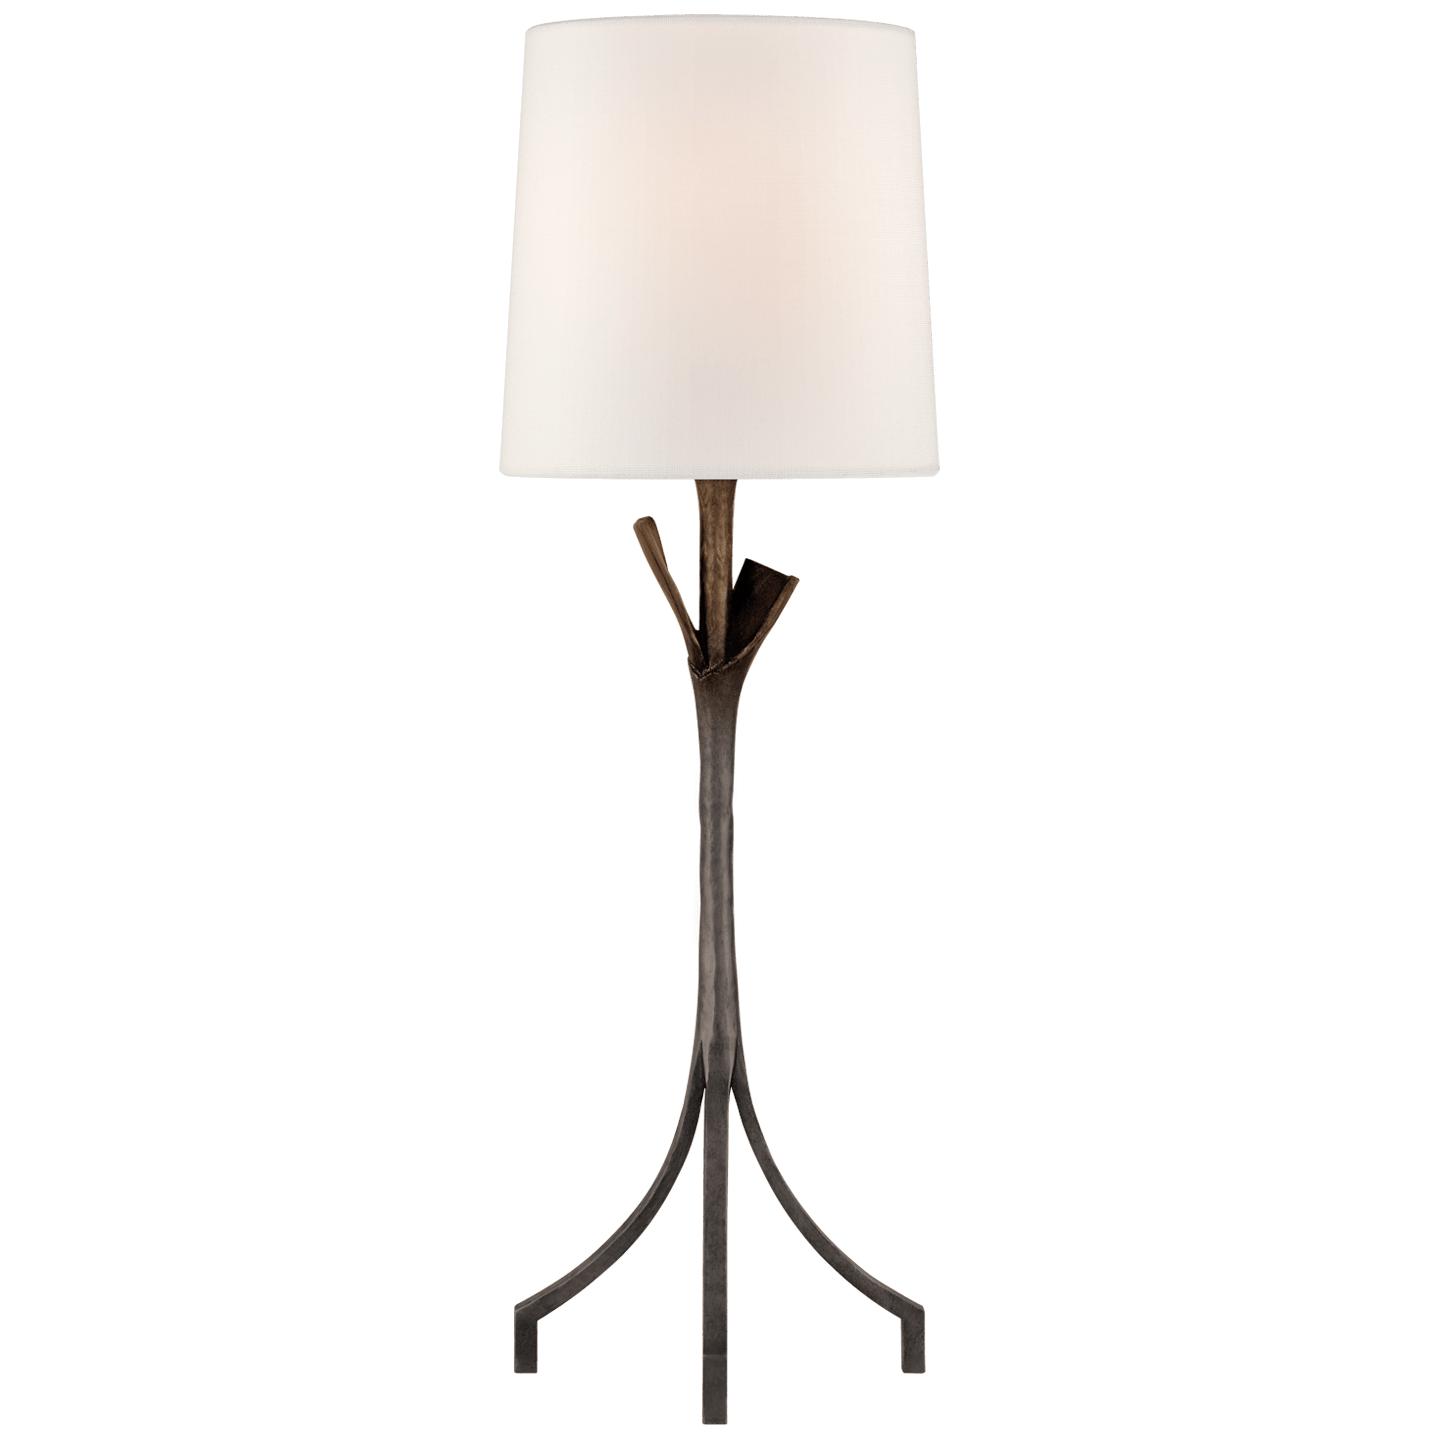 Купить Настольная лампа Fliana Table Lamp в интернет-магазине roooms.ru